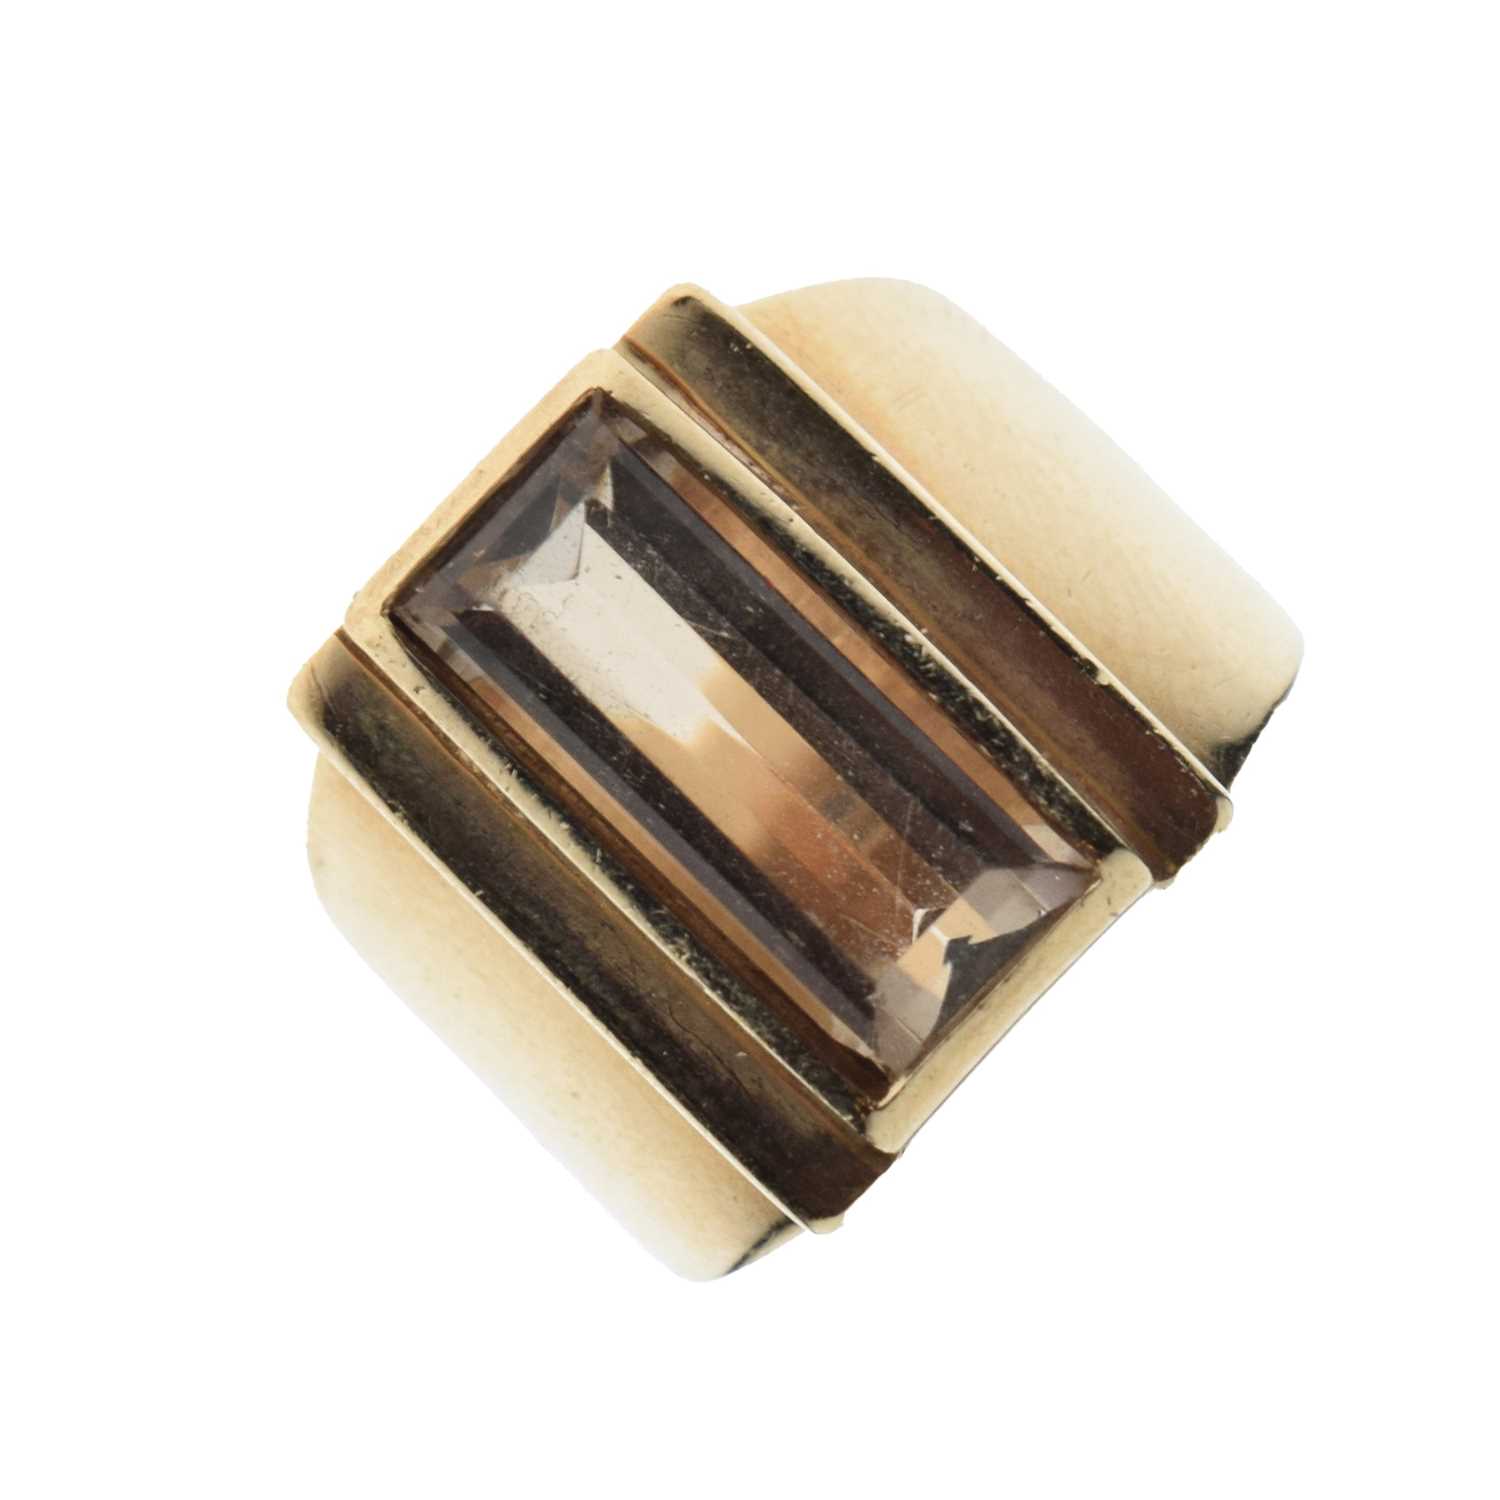 Modernist smoky quartz ring